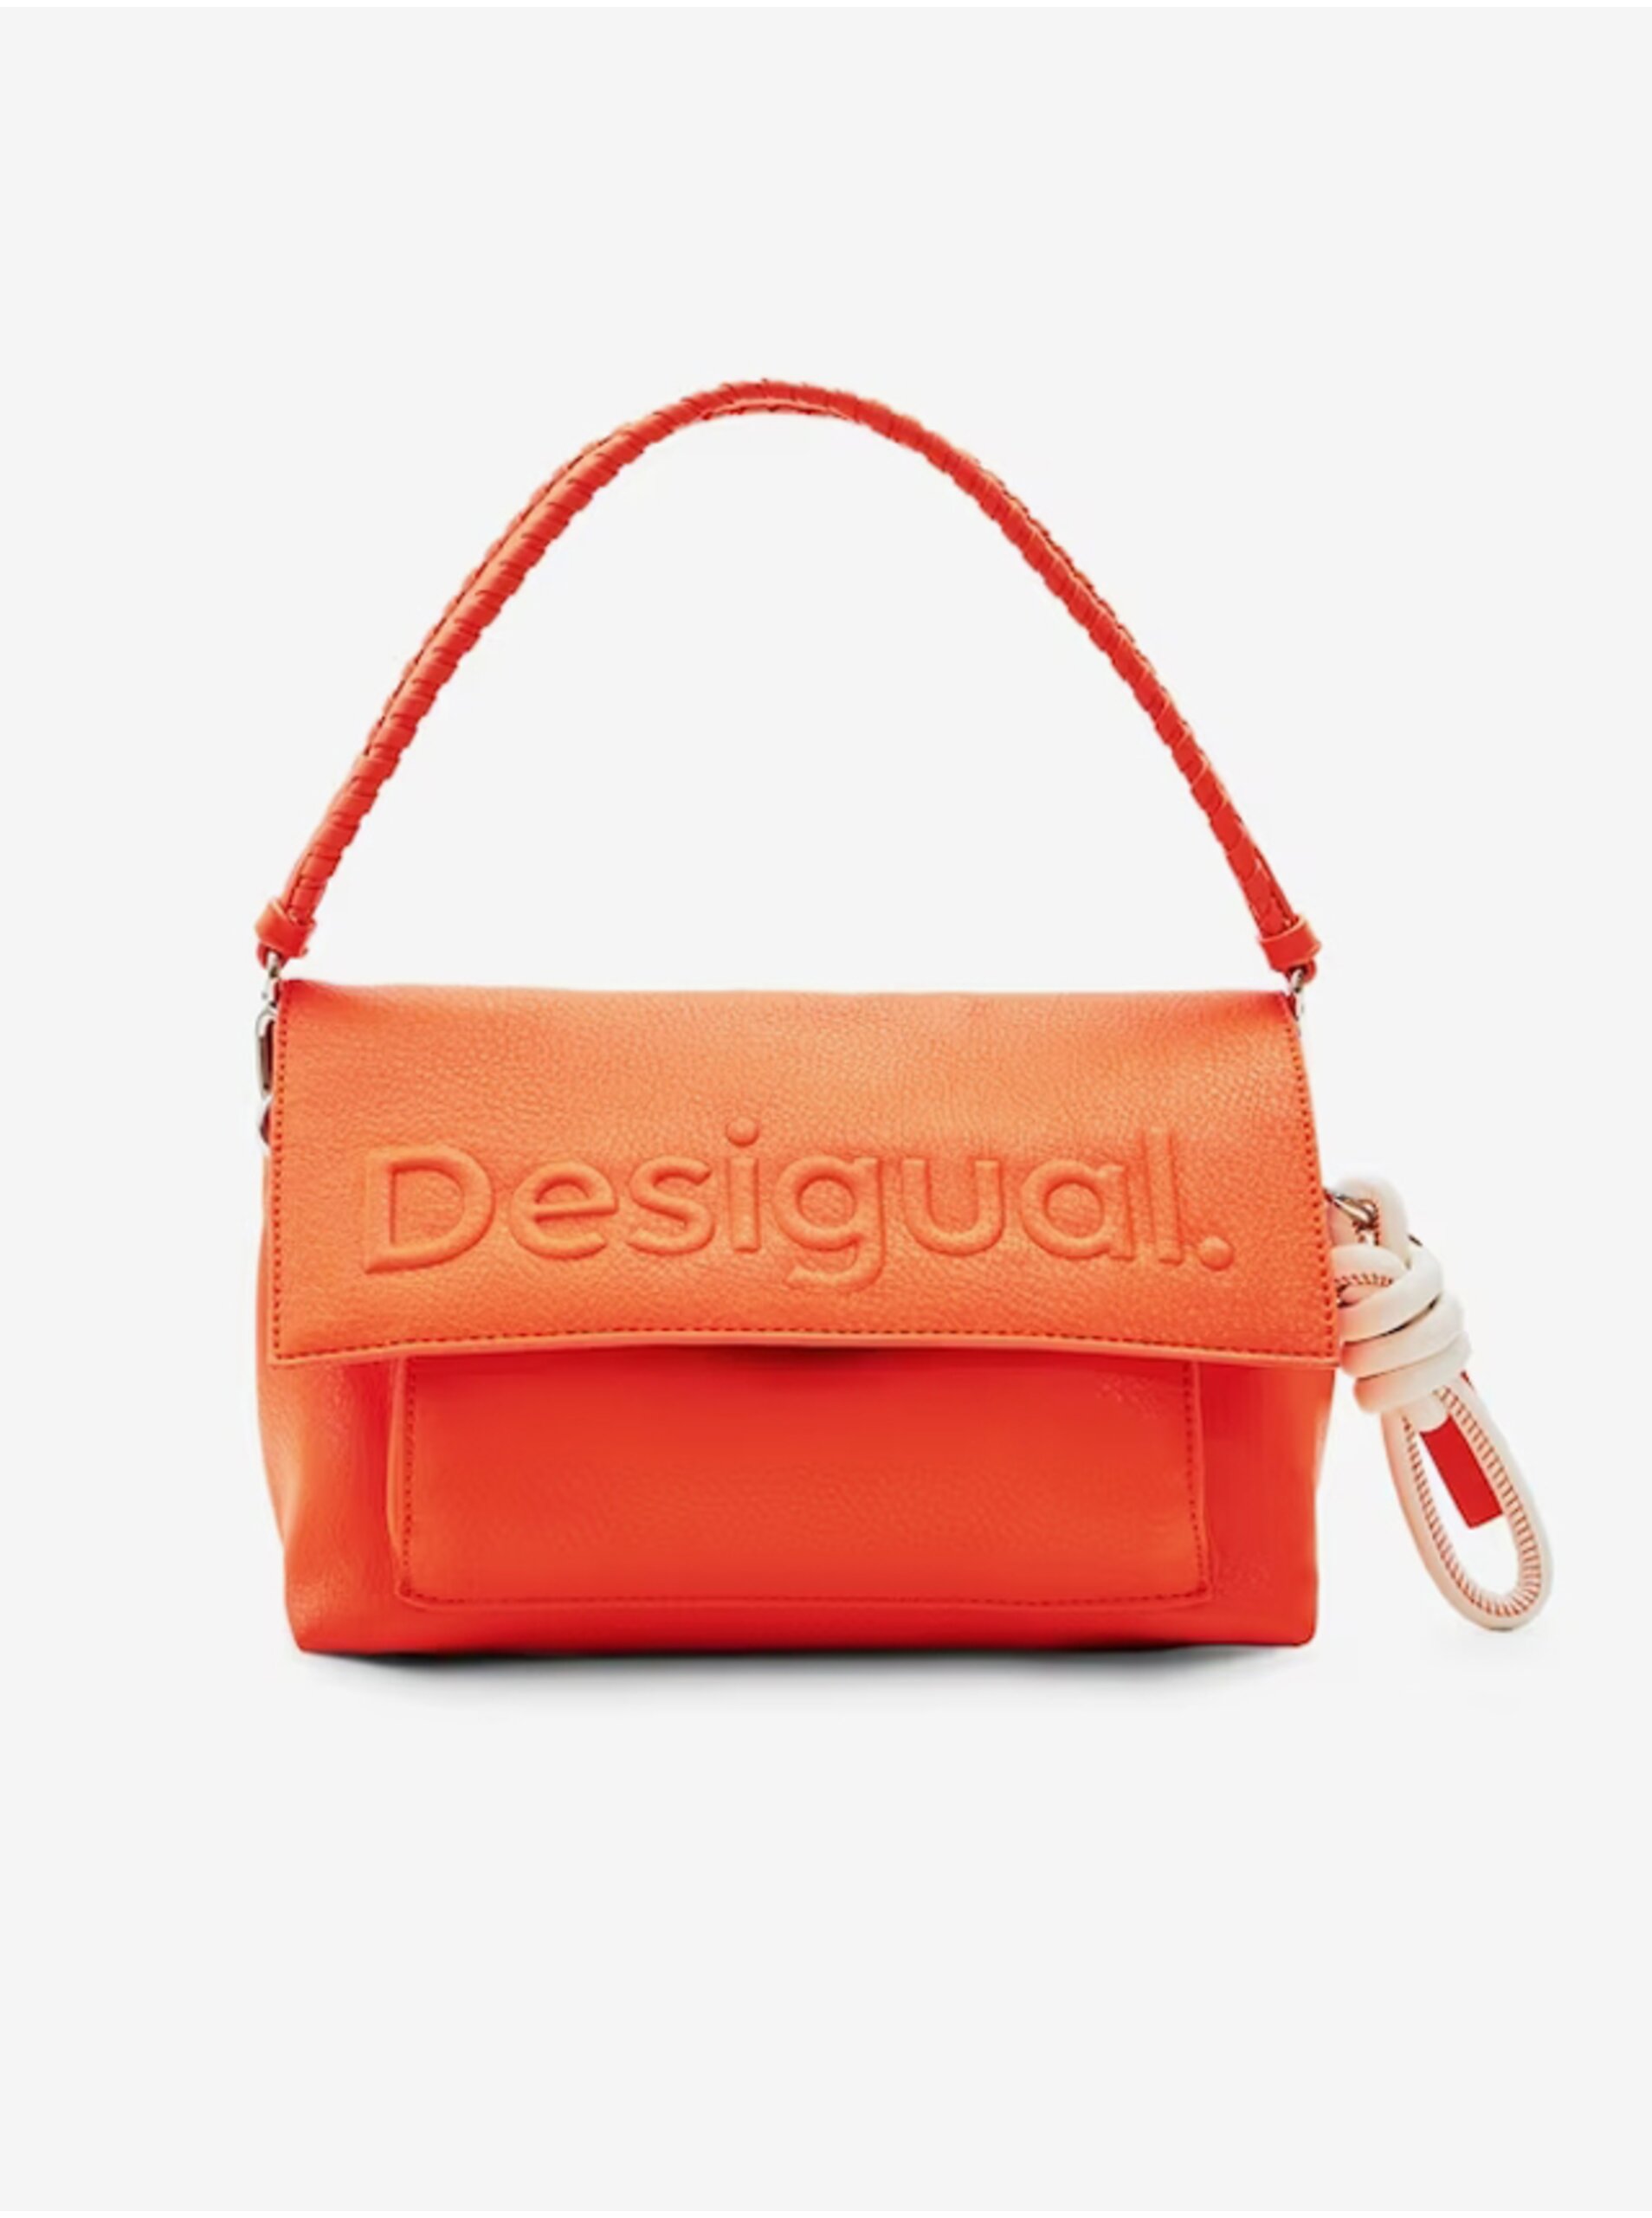 E-shop Oranžová dámská kabelka Desigual Venecia 2.0